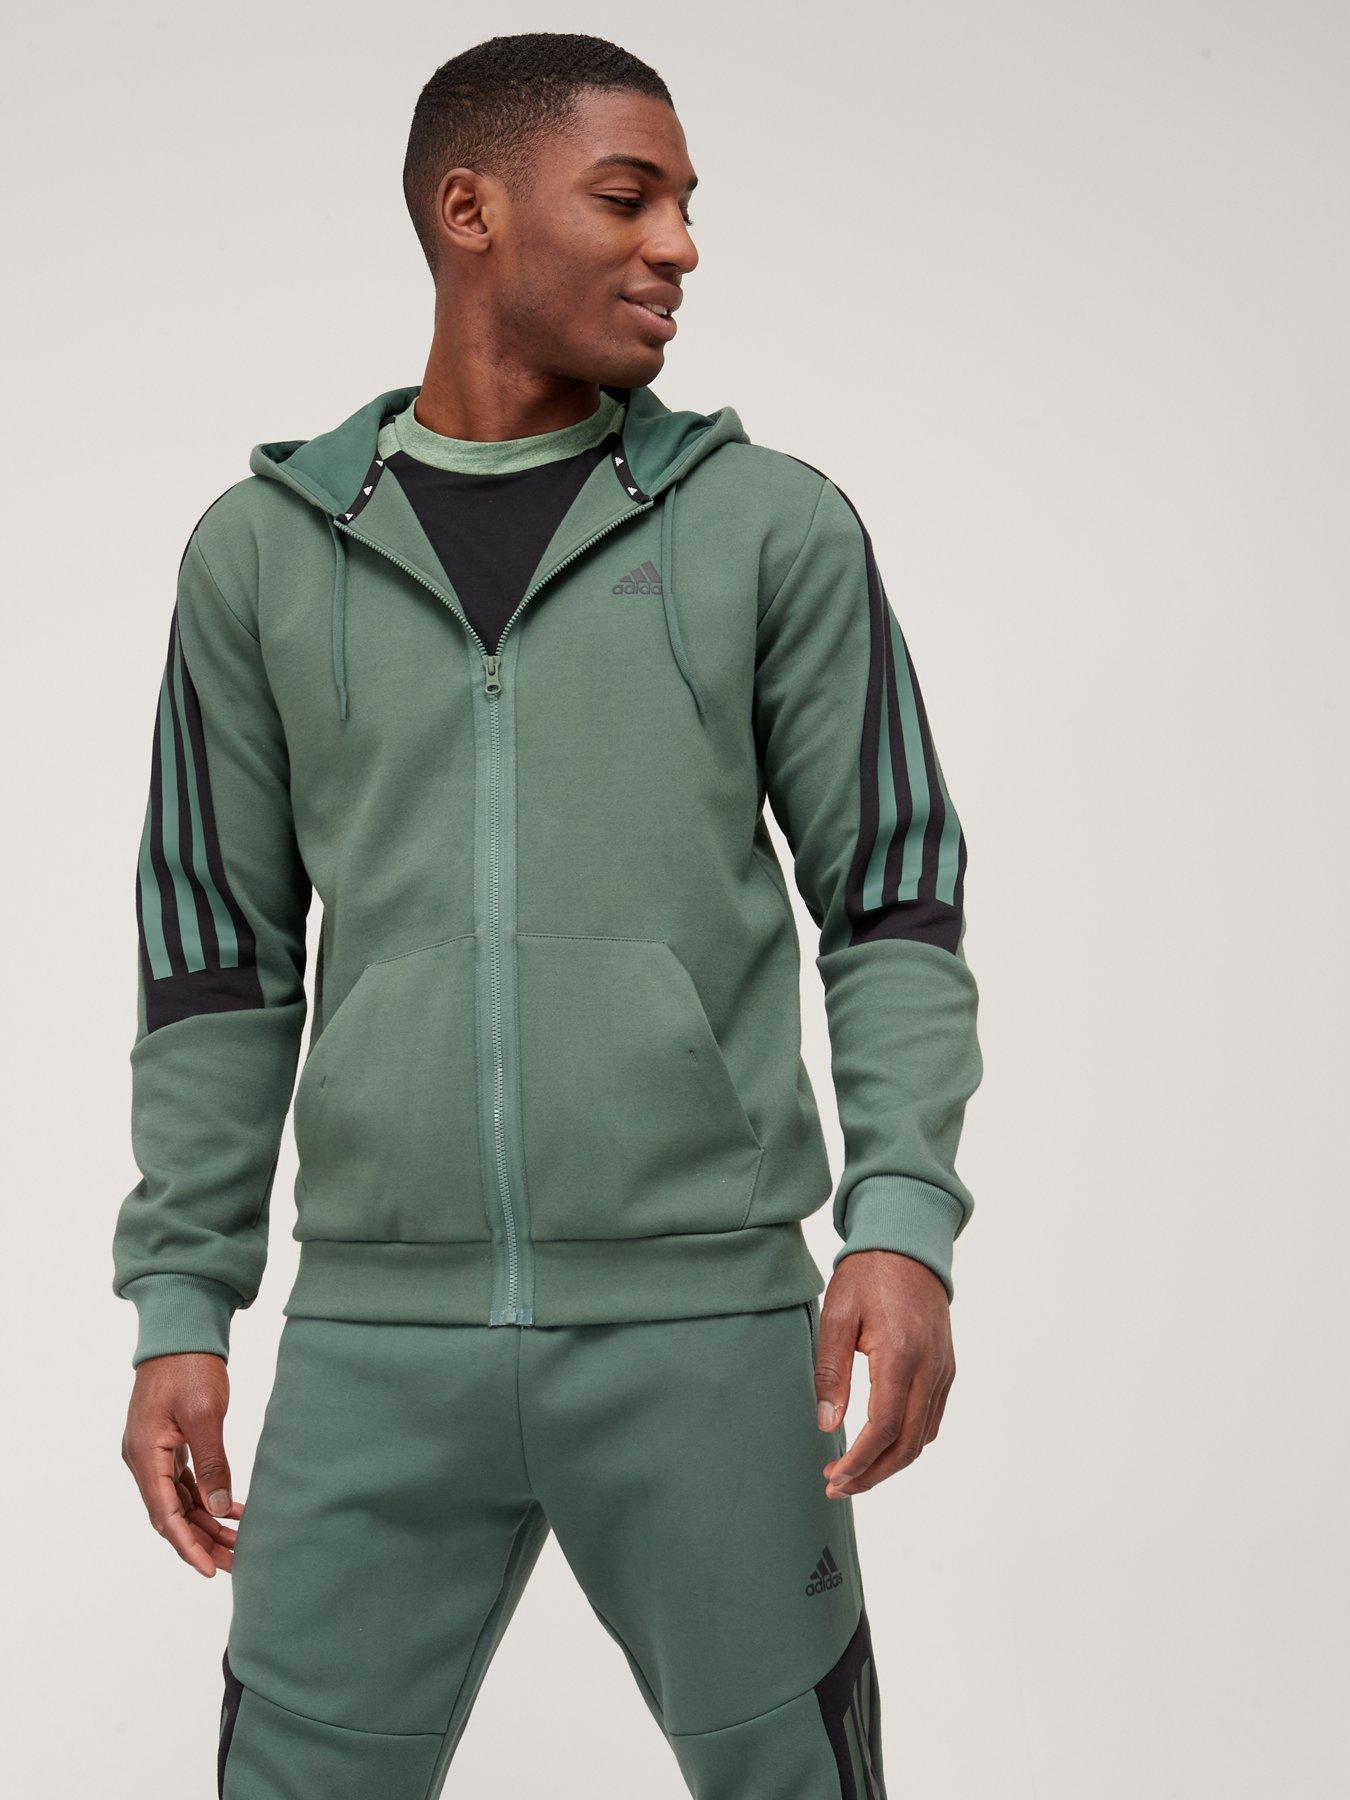 massa Spanning Voorbeeld Green | Hoodies | Adidas | Hoodies & sweatshirts | Men | Very Ireland